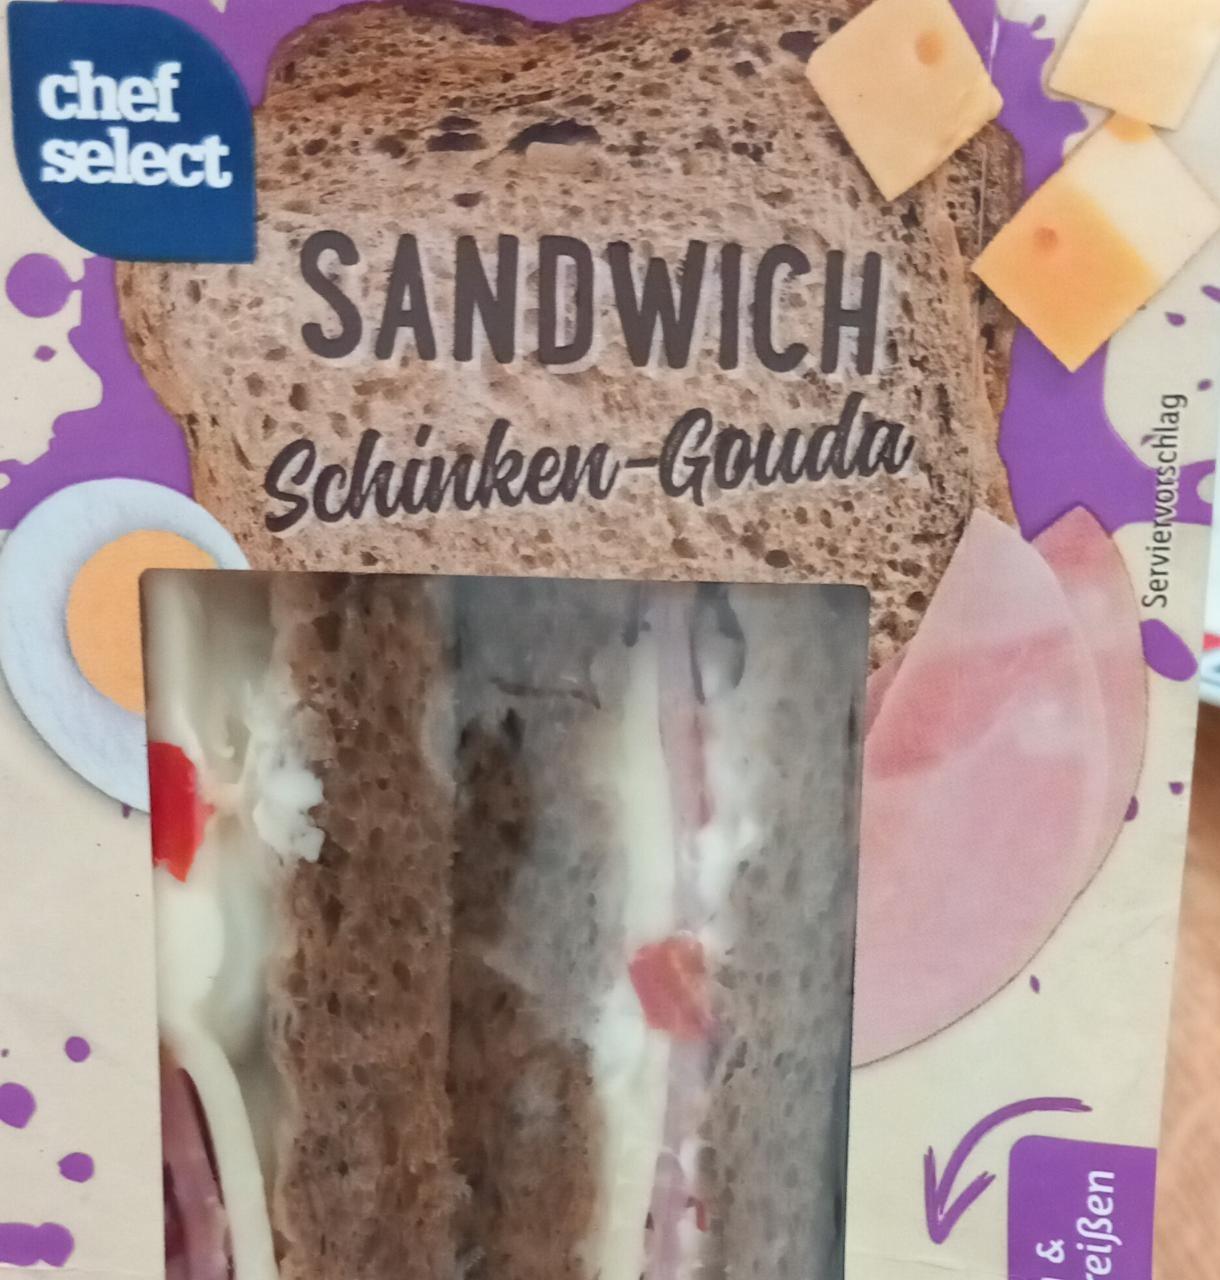 Sandwich Schinken-Gouda Chef Select - kalorie, kJ a nutriční hodnoty